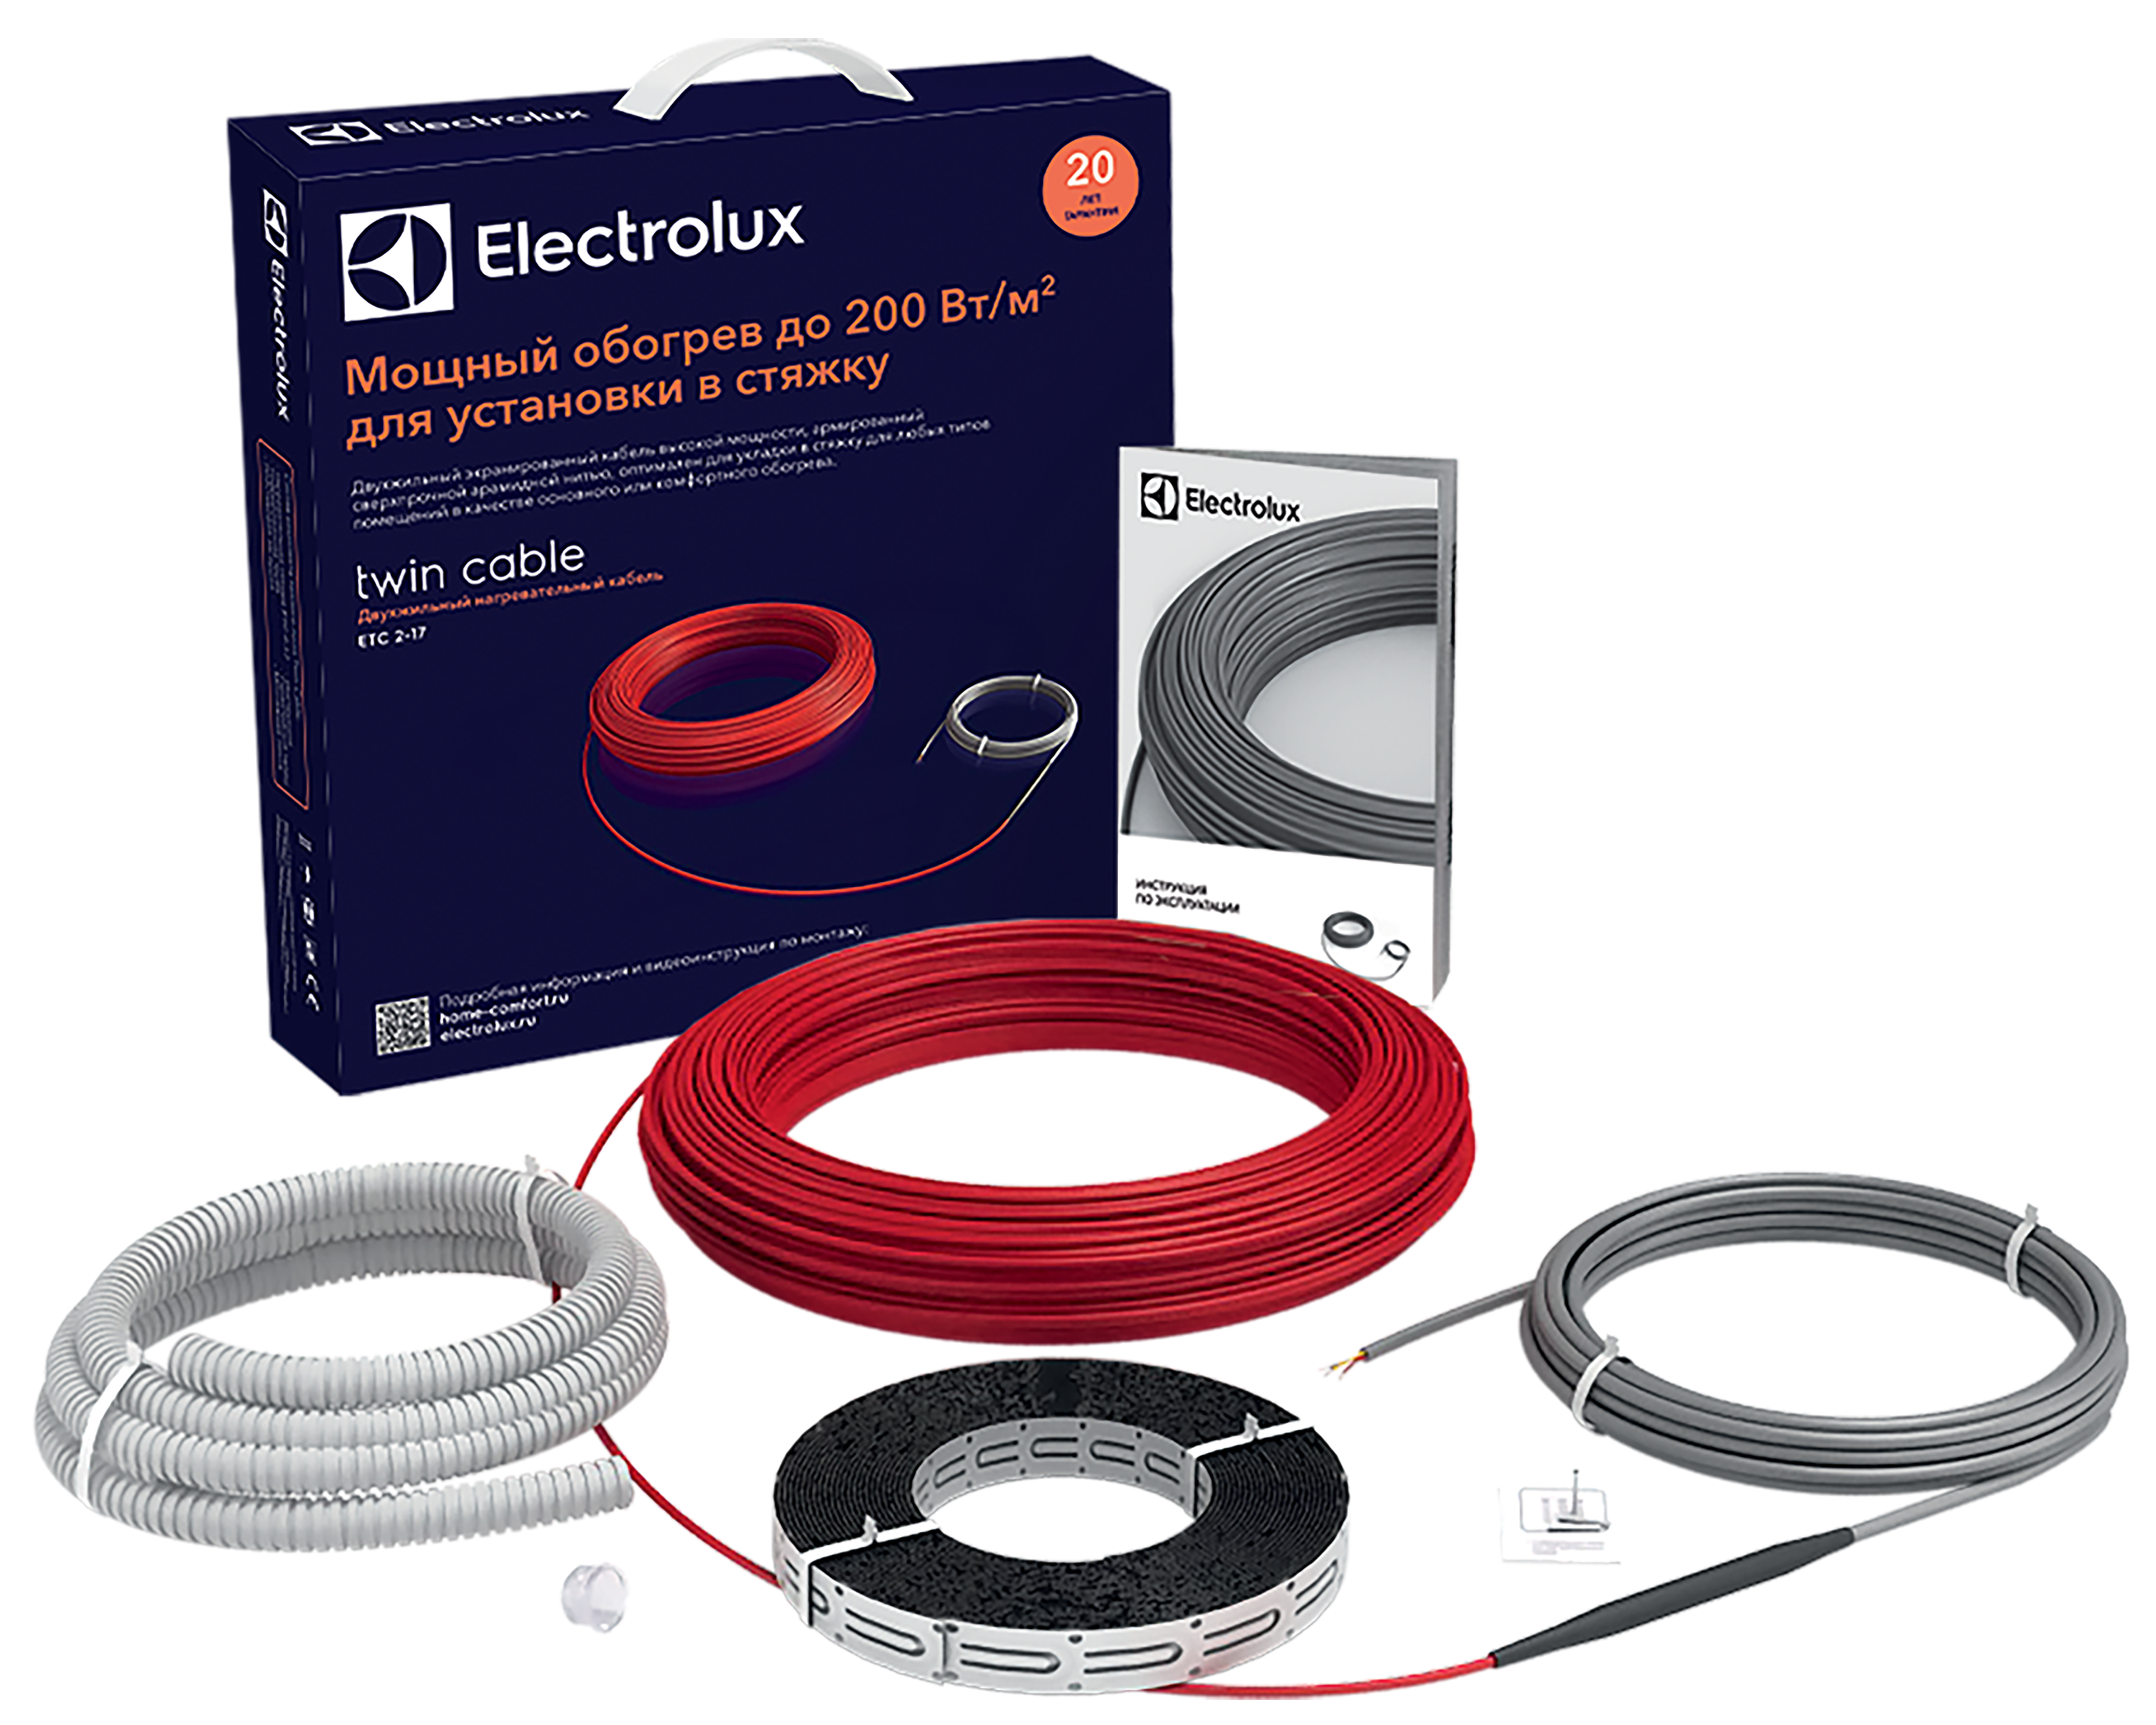 Тепла підлога Electrolux під ламінат Electrolux Twin Cable ETC 2-17-1200